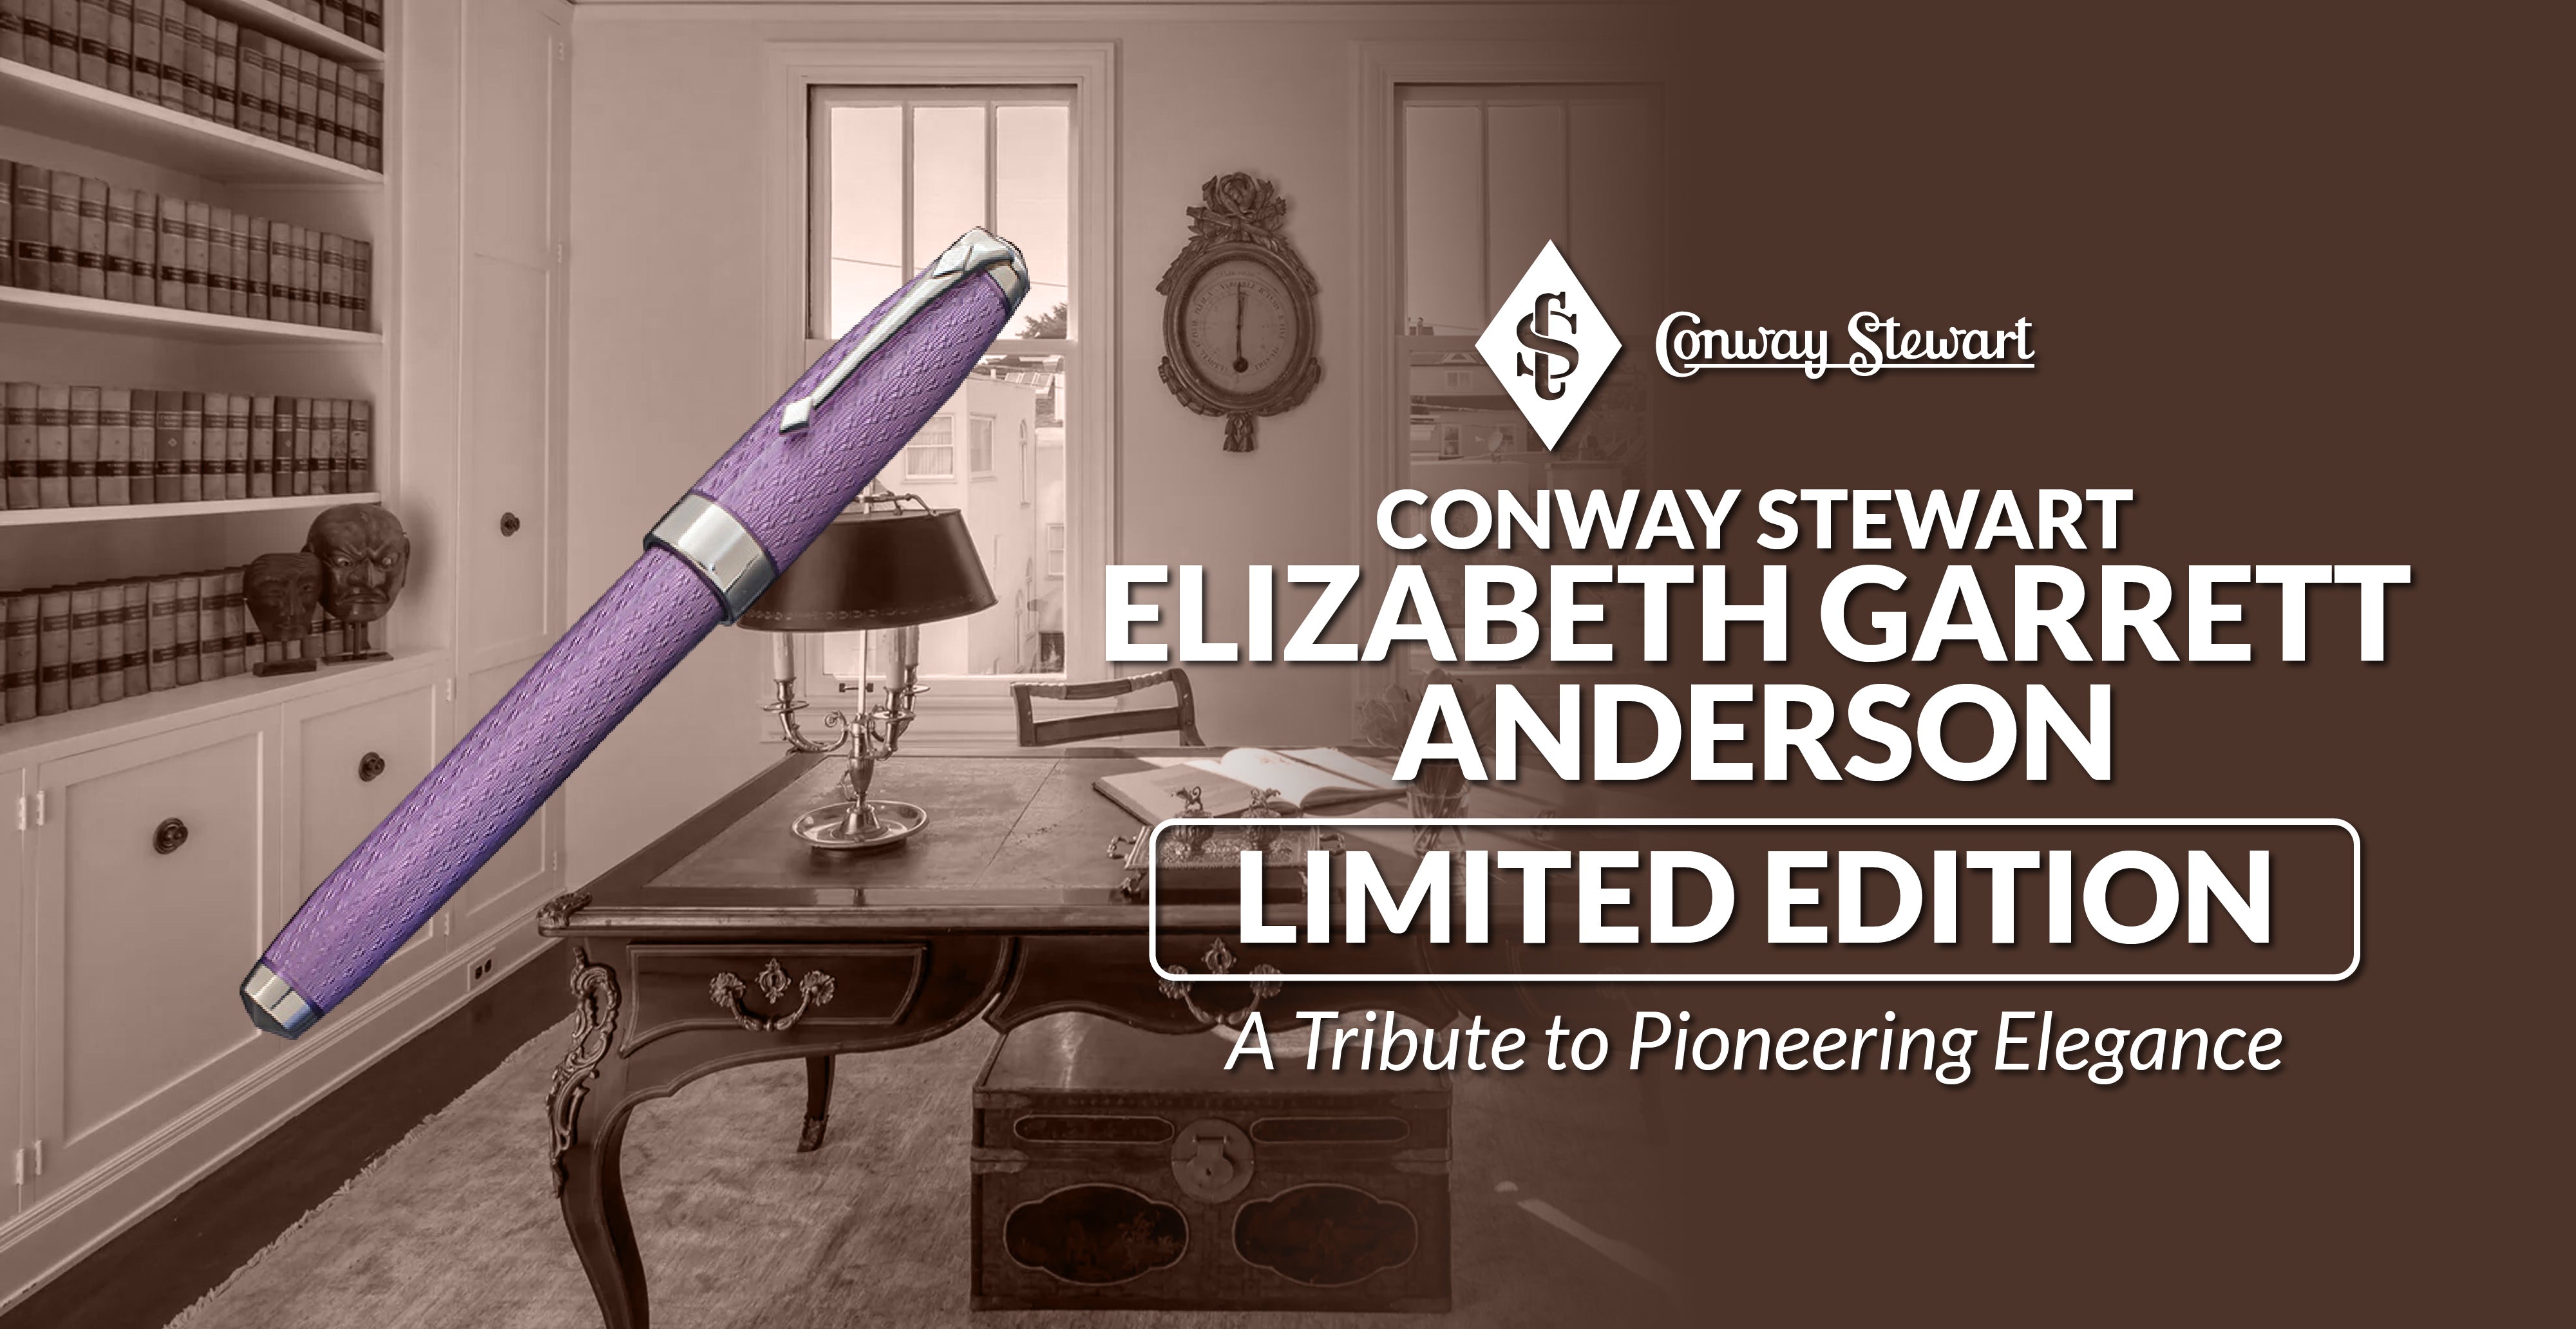 Conway Stewart 'Elizabeth Garrett Anderson' Limited Edition